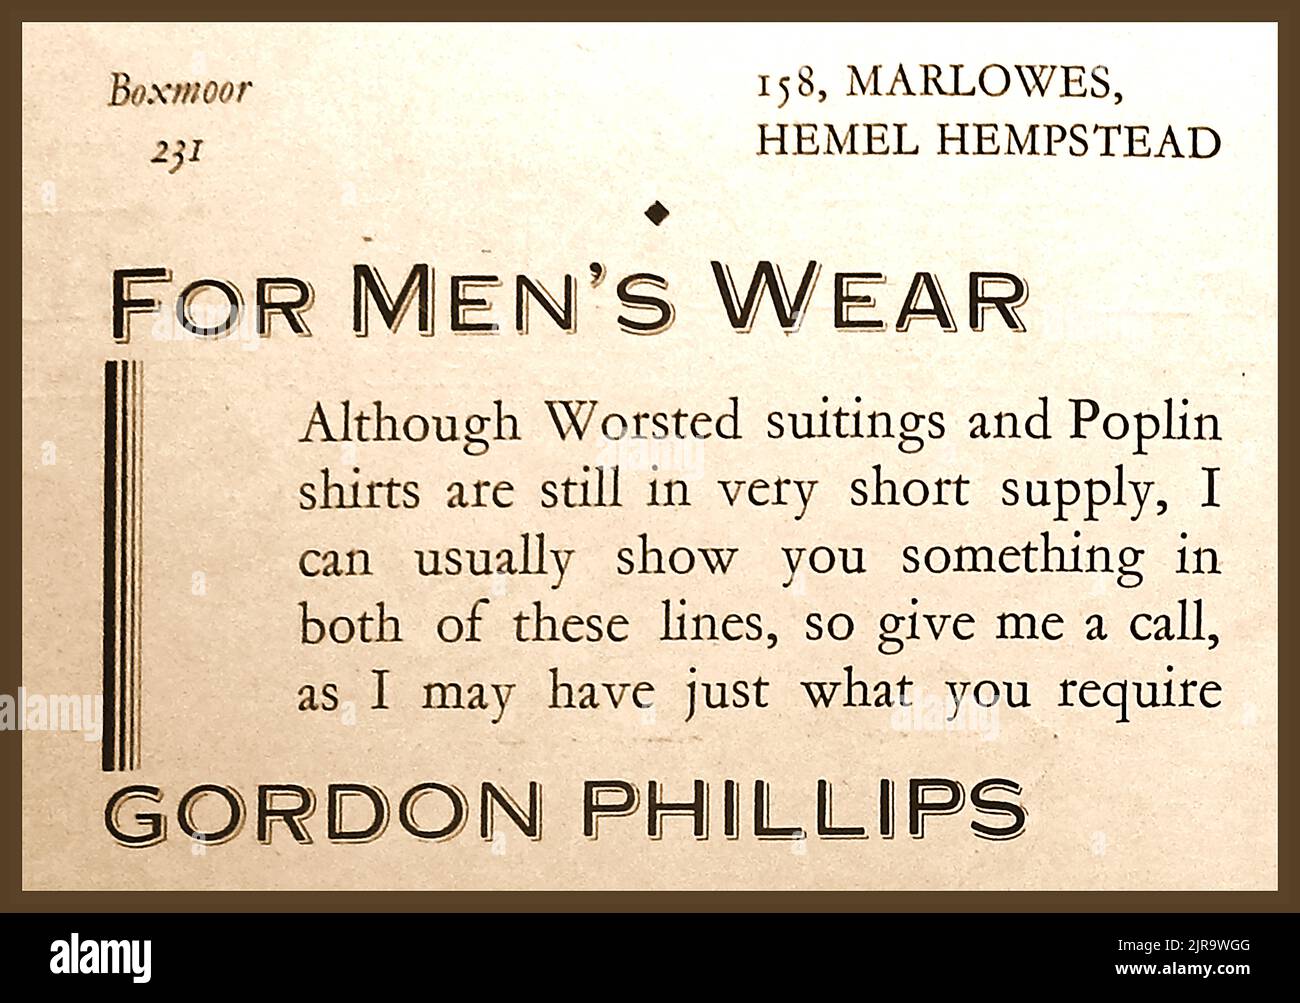 Une publicité des années 1940 pour Gordon Phillips, vêtements pour hommes, de Hemel Hempstead Banque D'Images